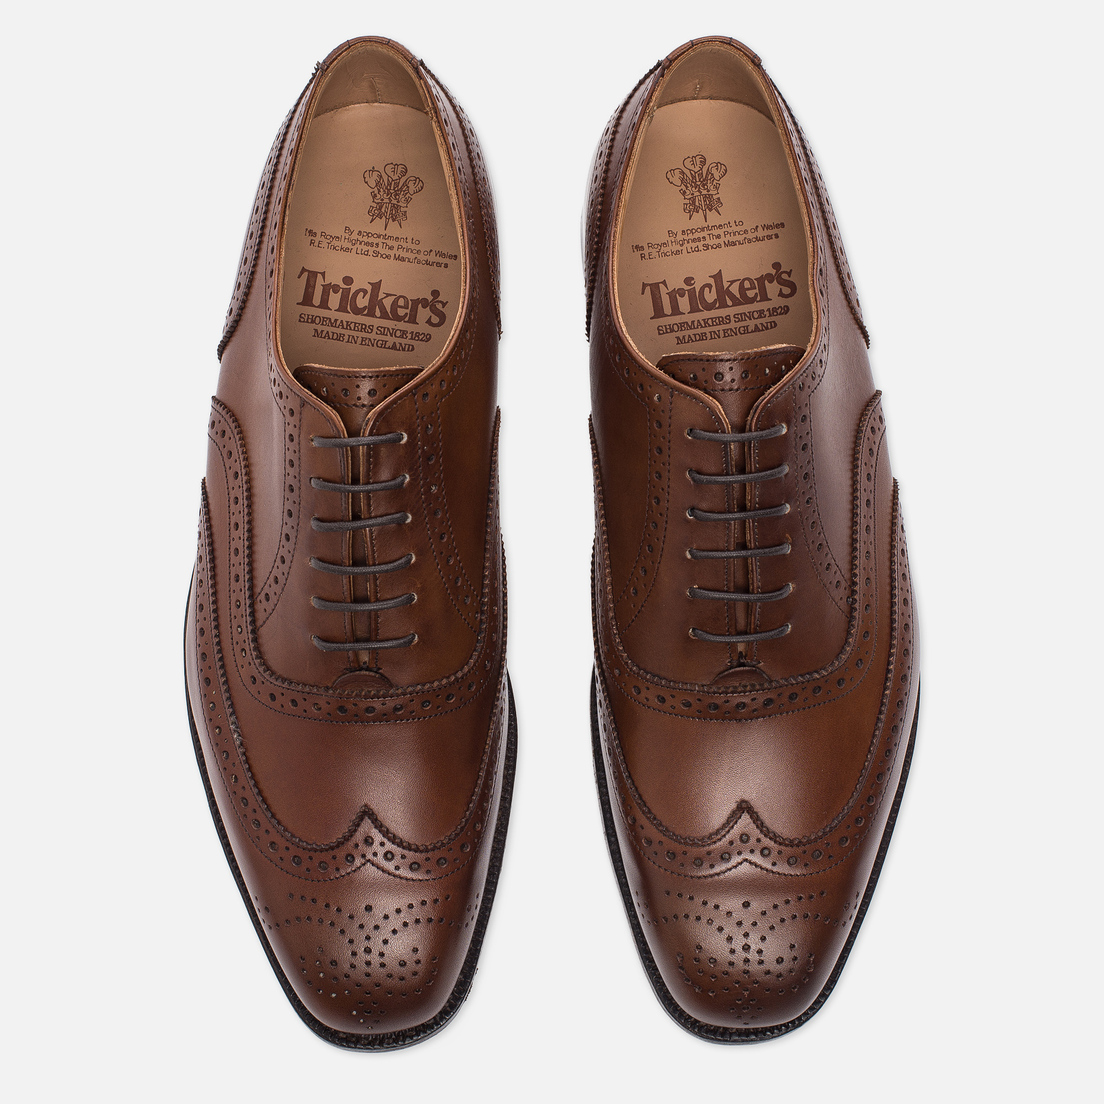 Tricker's Мужские ботинки броги Brogue Oxford Piccadilly